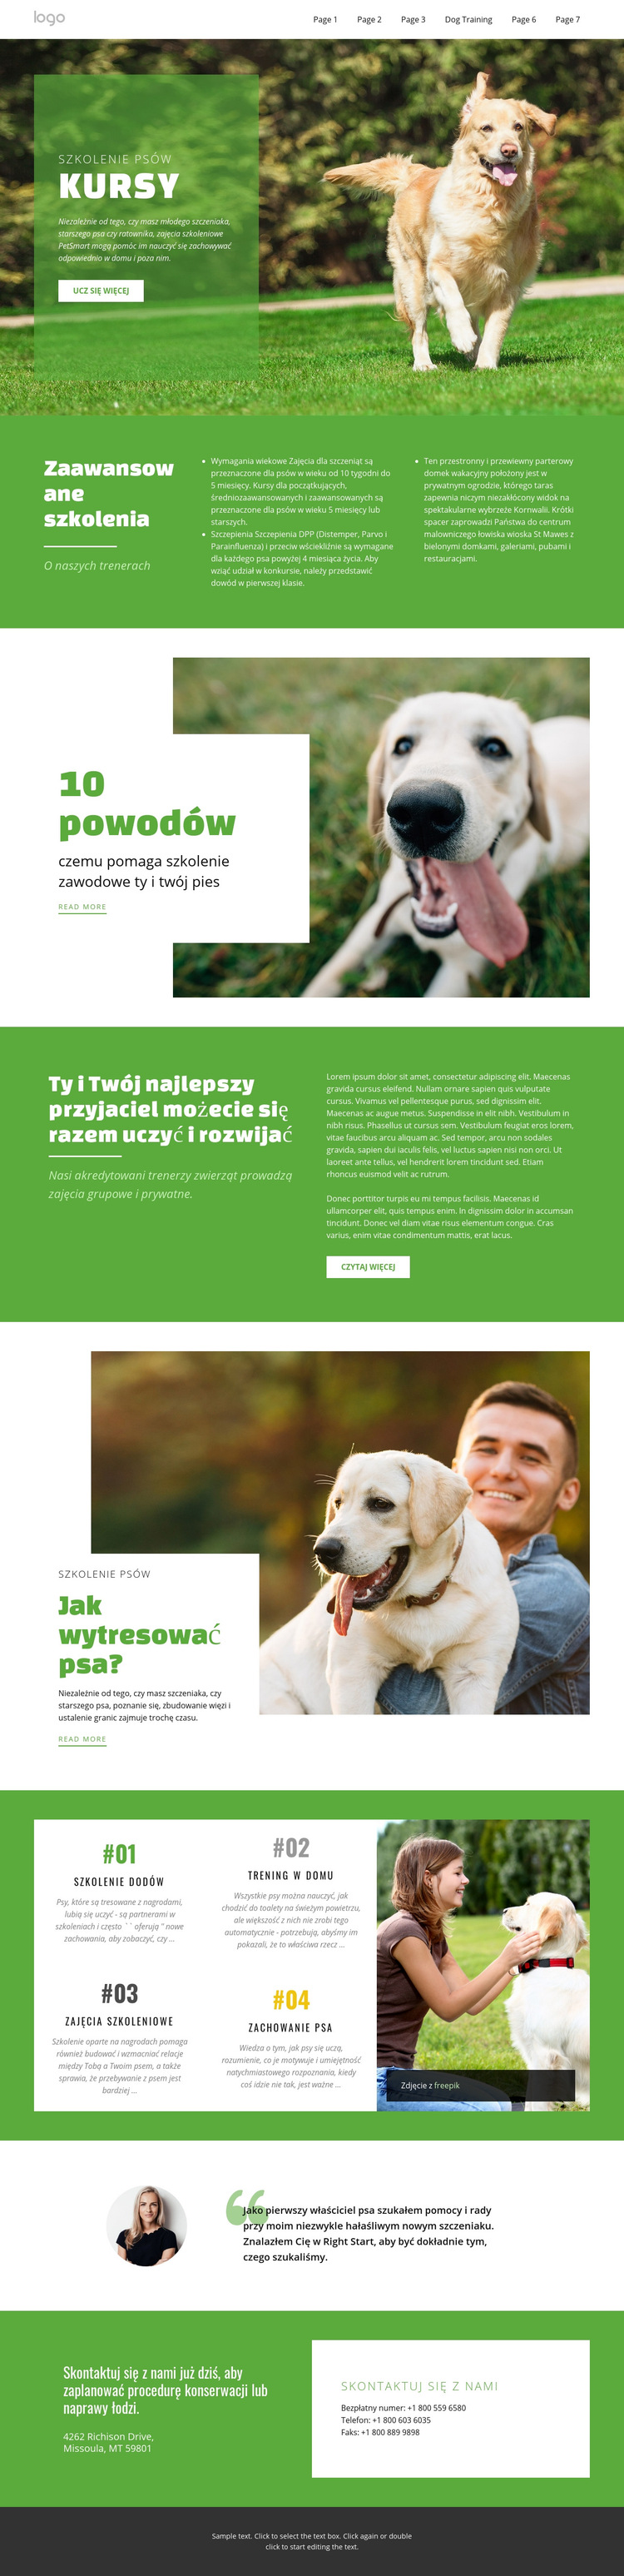 Kursy szkoleniowe dla zwierząt domowych Szablon witryny sieci Web